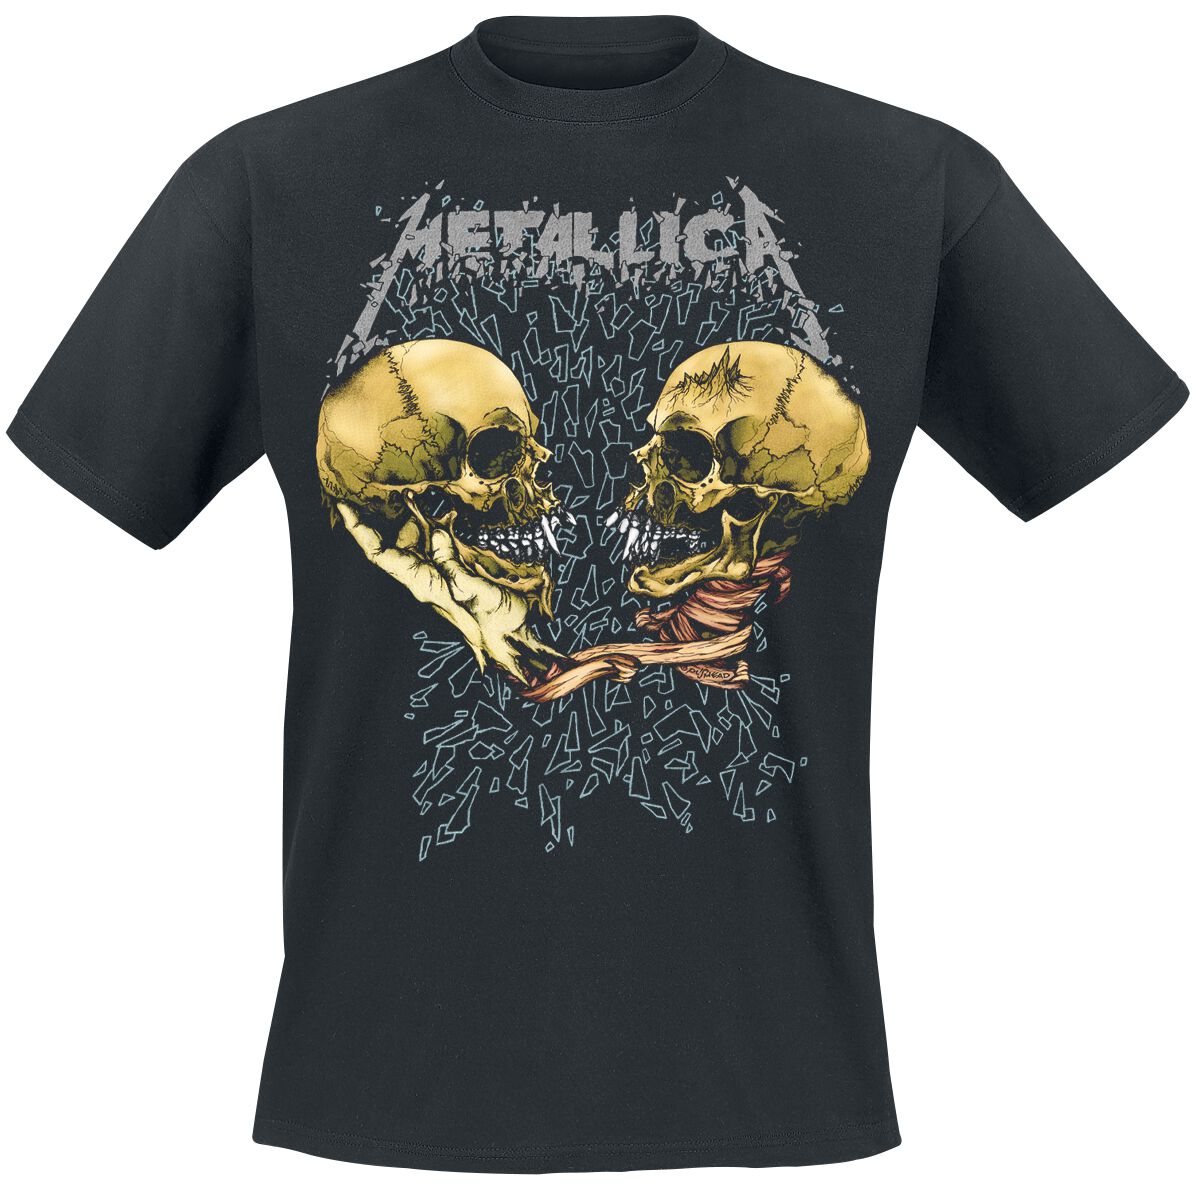 Metallica T-Shirt - Sad But True - S bis XXL - für Männer - Größe L - schwarz  - Lizenziertes Merchandise!